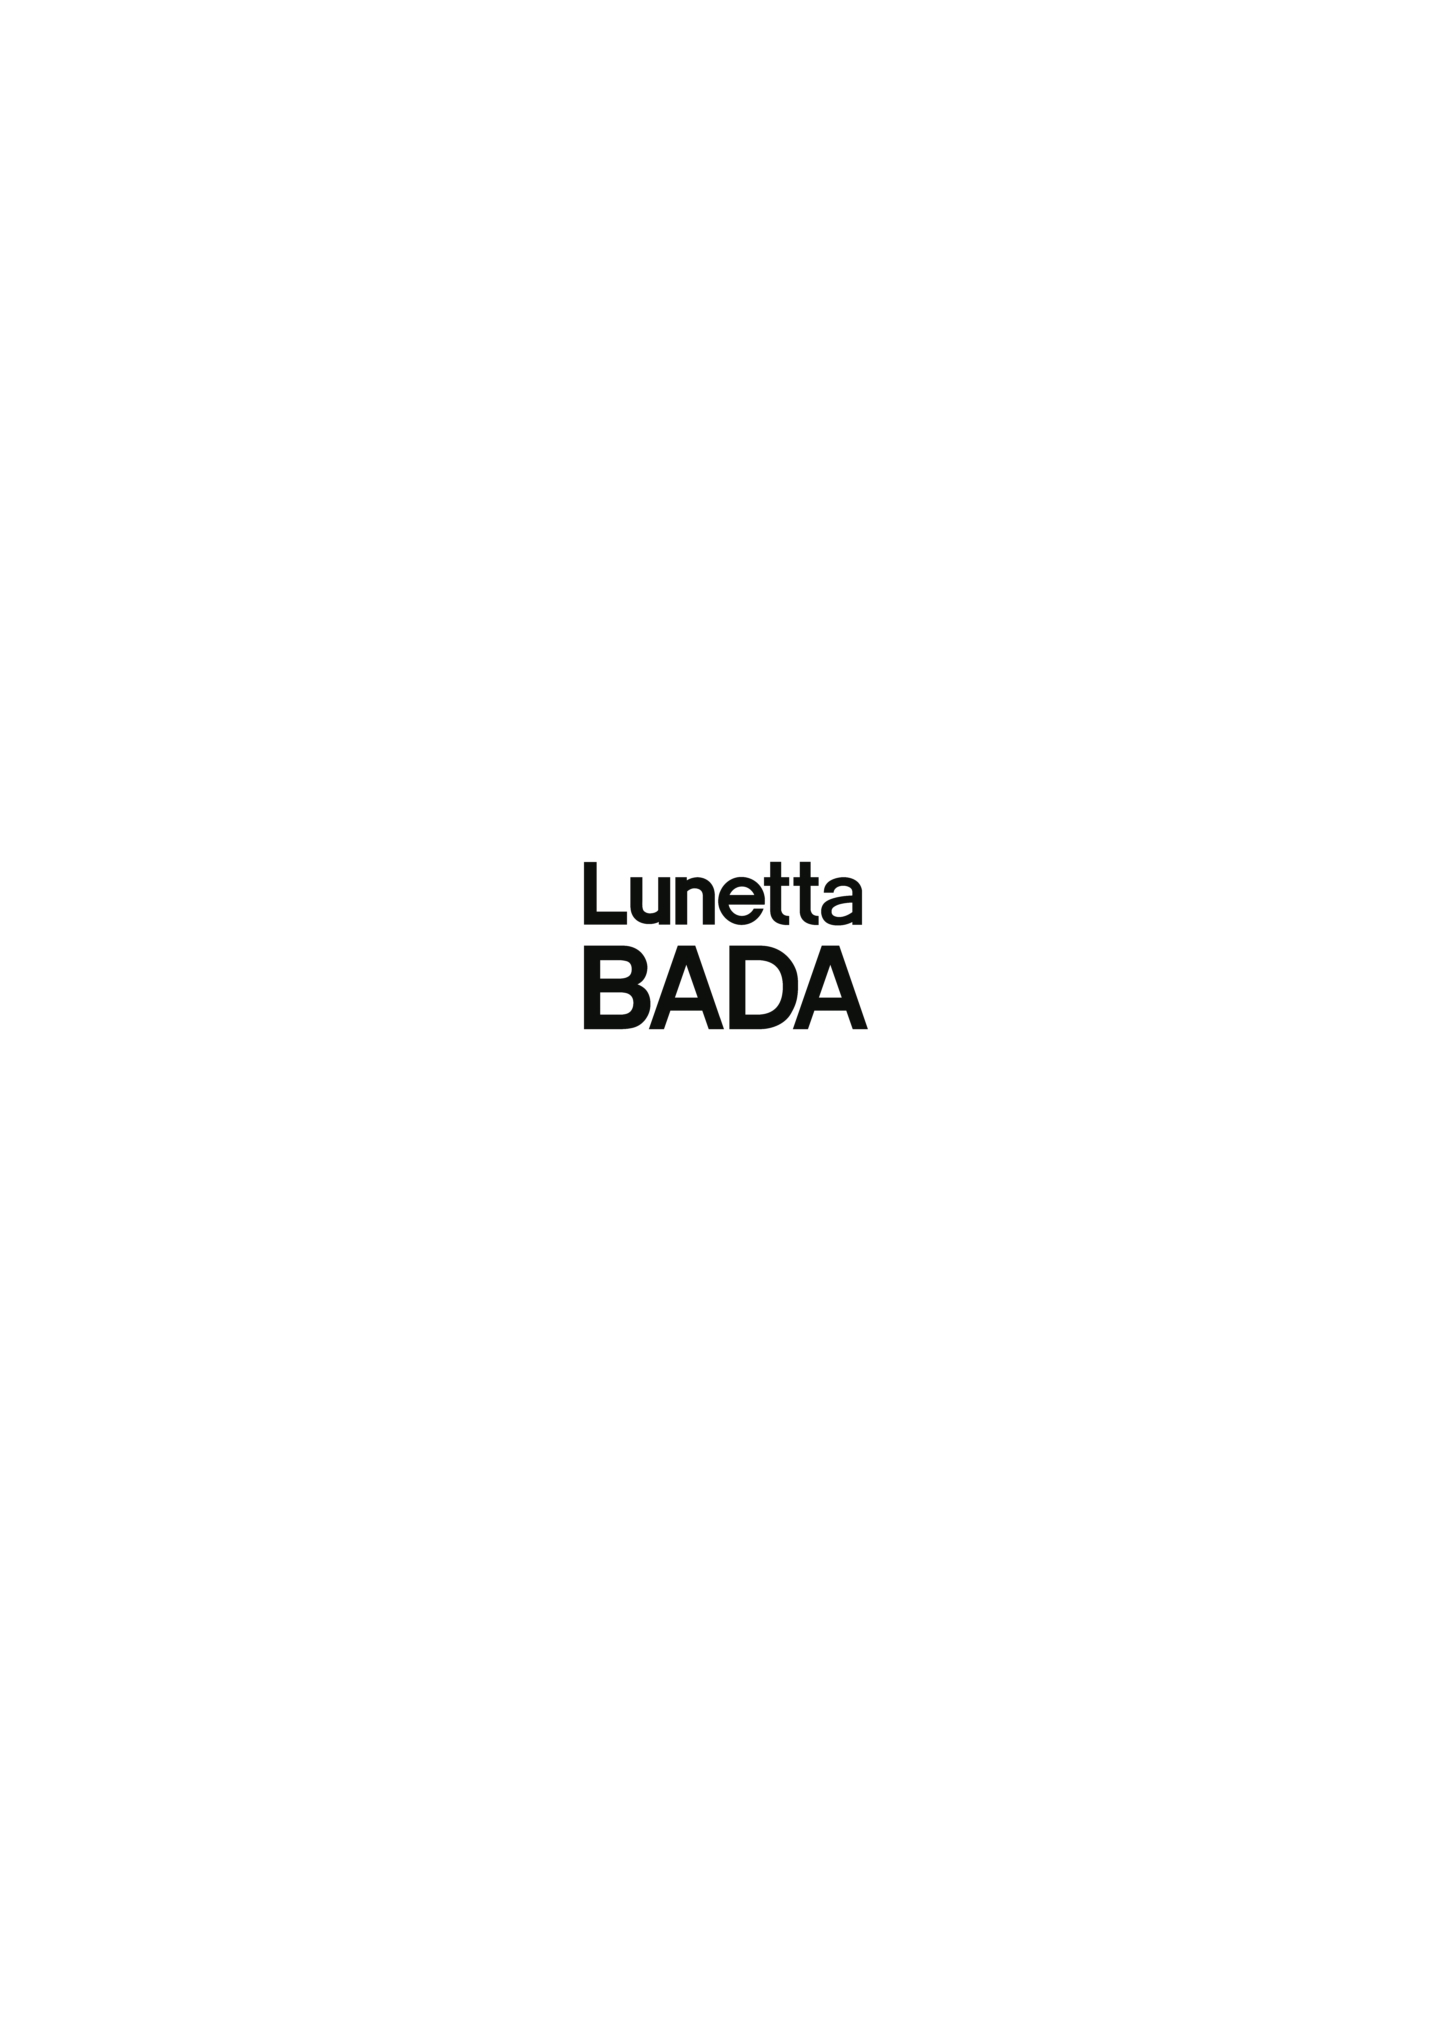 新ブランド「Lunetta BADA」（ルネッタ・バダ）